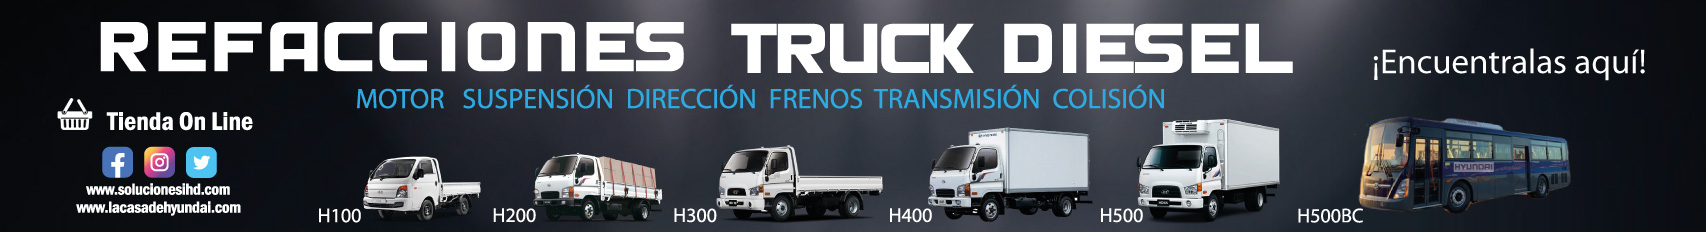 Banner_Soluciones_Truck_diesel.jpg